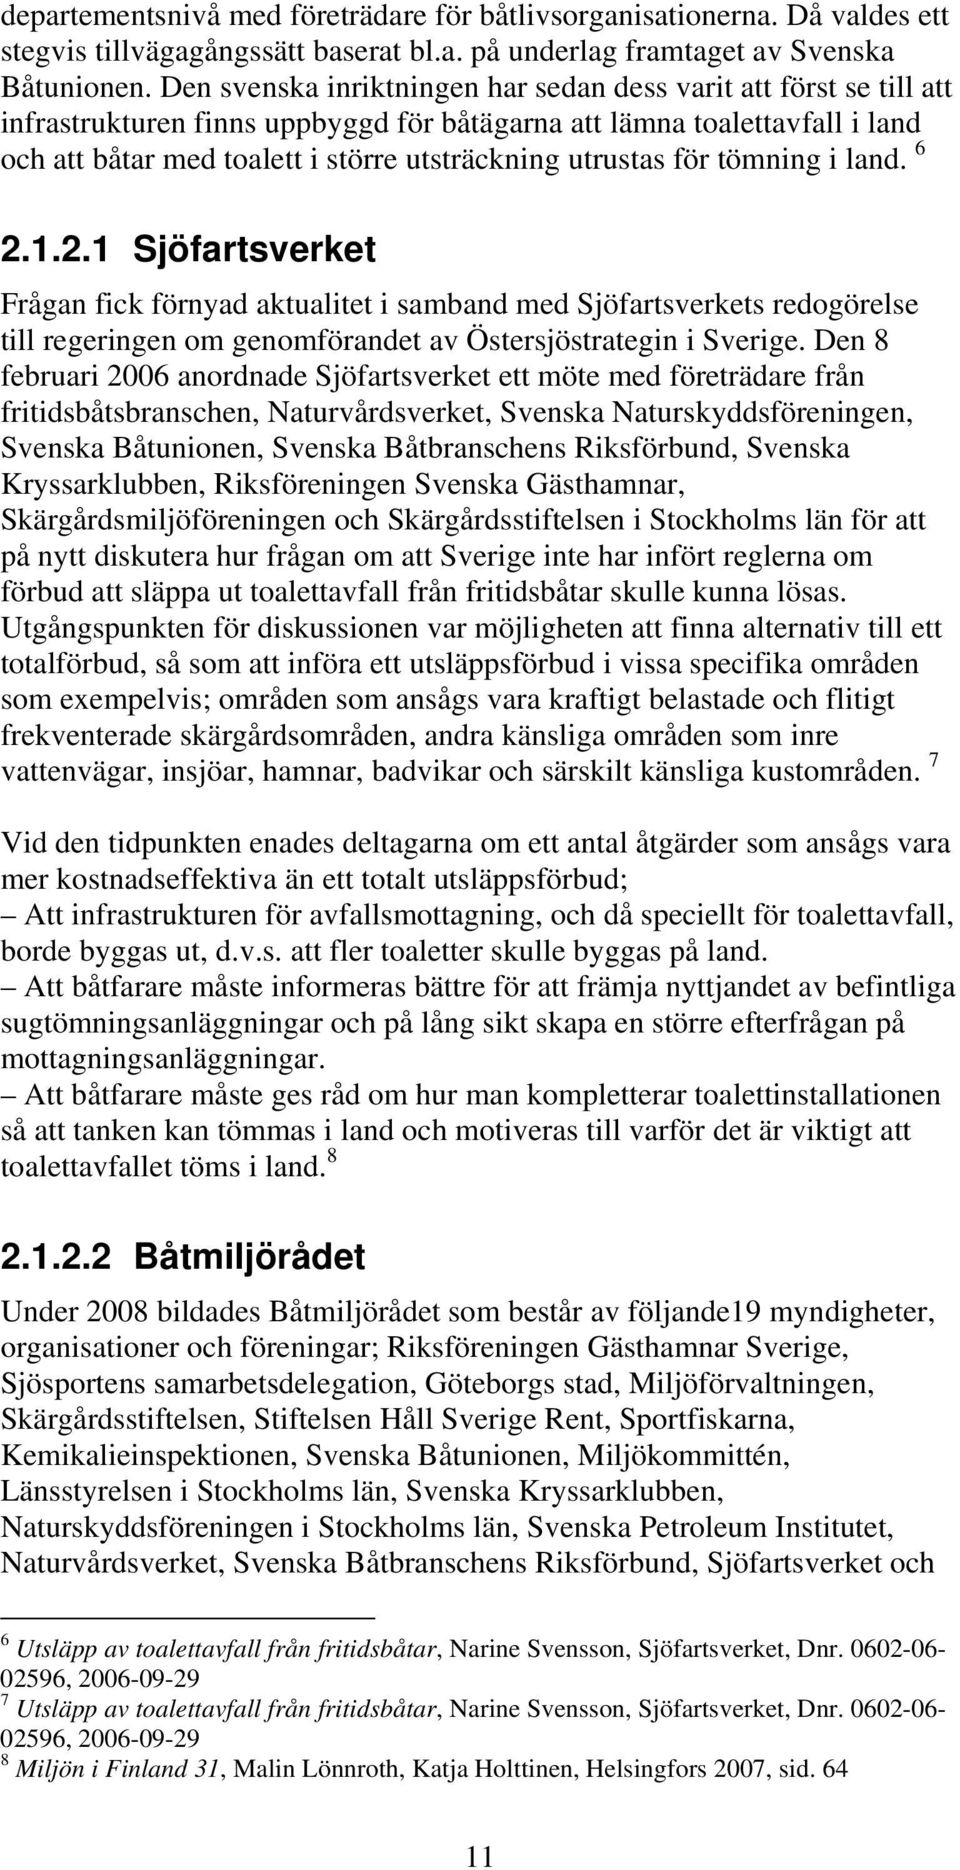 utrustas för tömning i land. 6 2.1.2.1 Sjöfartsverket Frågan fick förnyad aktualitet i samband med Sjöfartsverkets redogörelse till regeringen om genomförandet av Östersjöstrategin i Sverige.